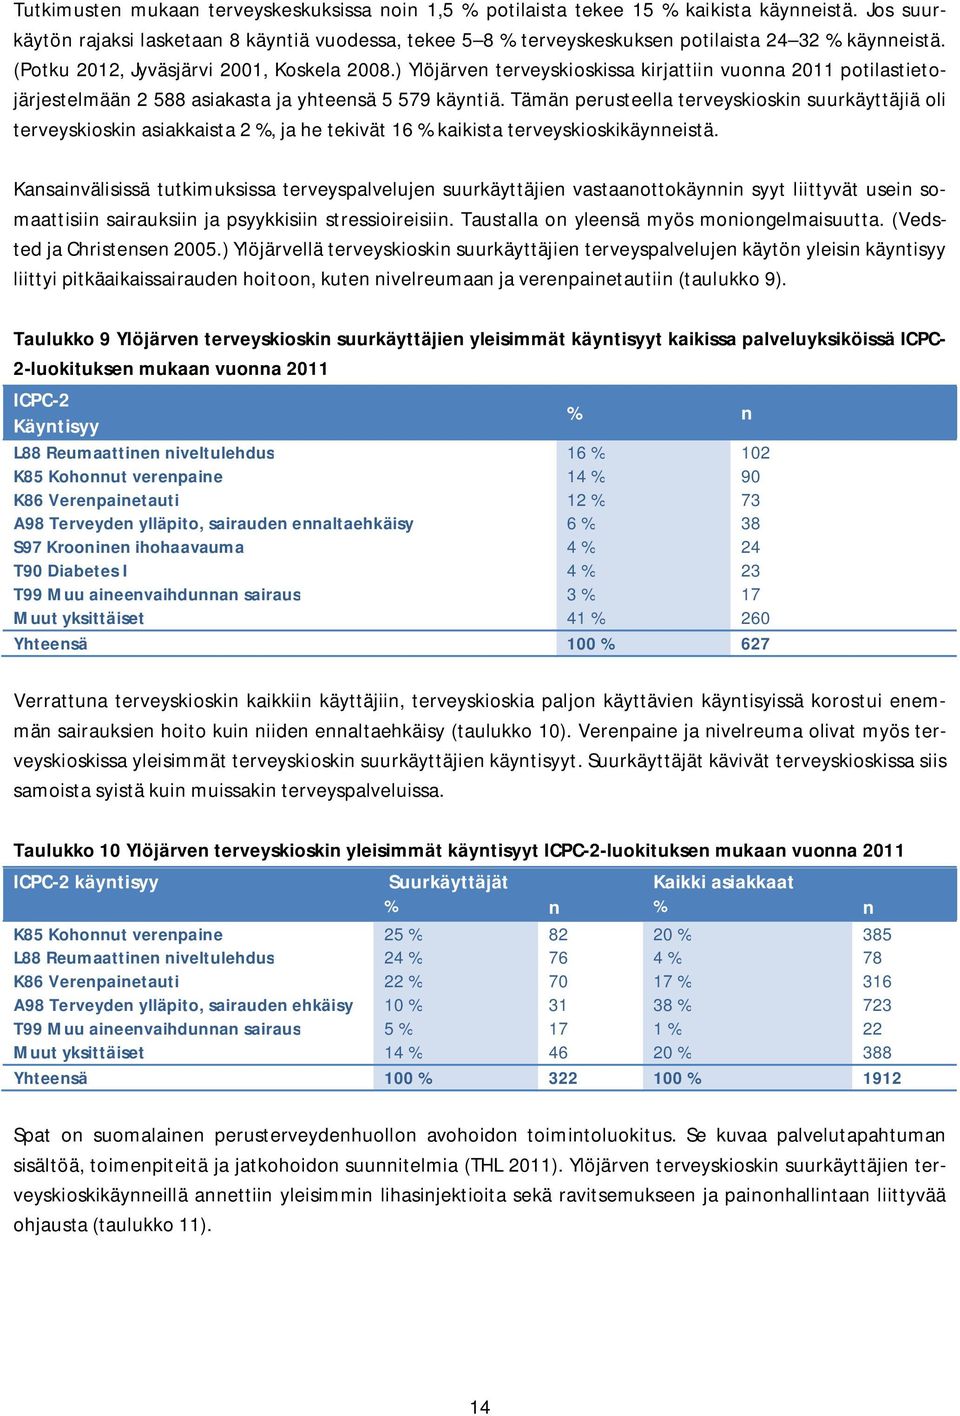 ) Ylöjärven terveyskioskissa kirjattiin vuonna 2011 potilastietojärjestelmään 2 588 asiakasta ja yhteensä 5 579 käyntiä.